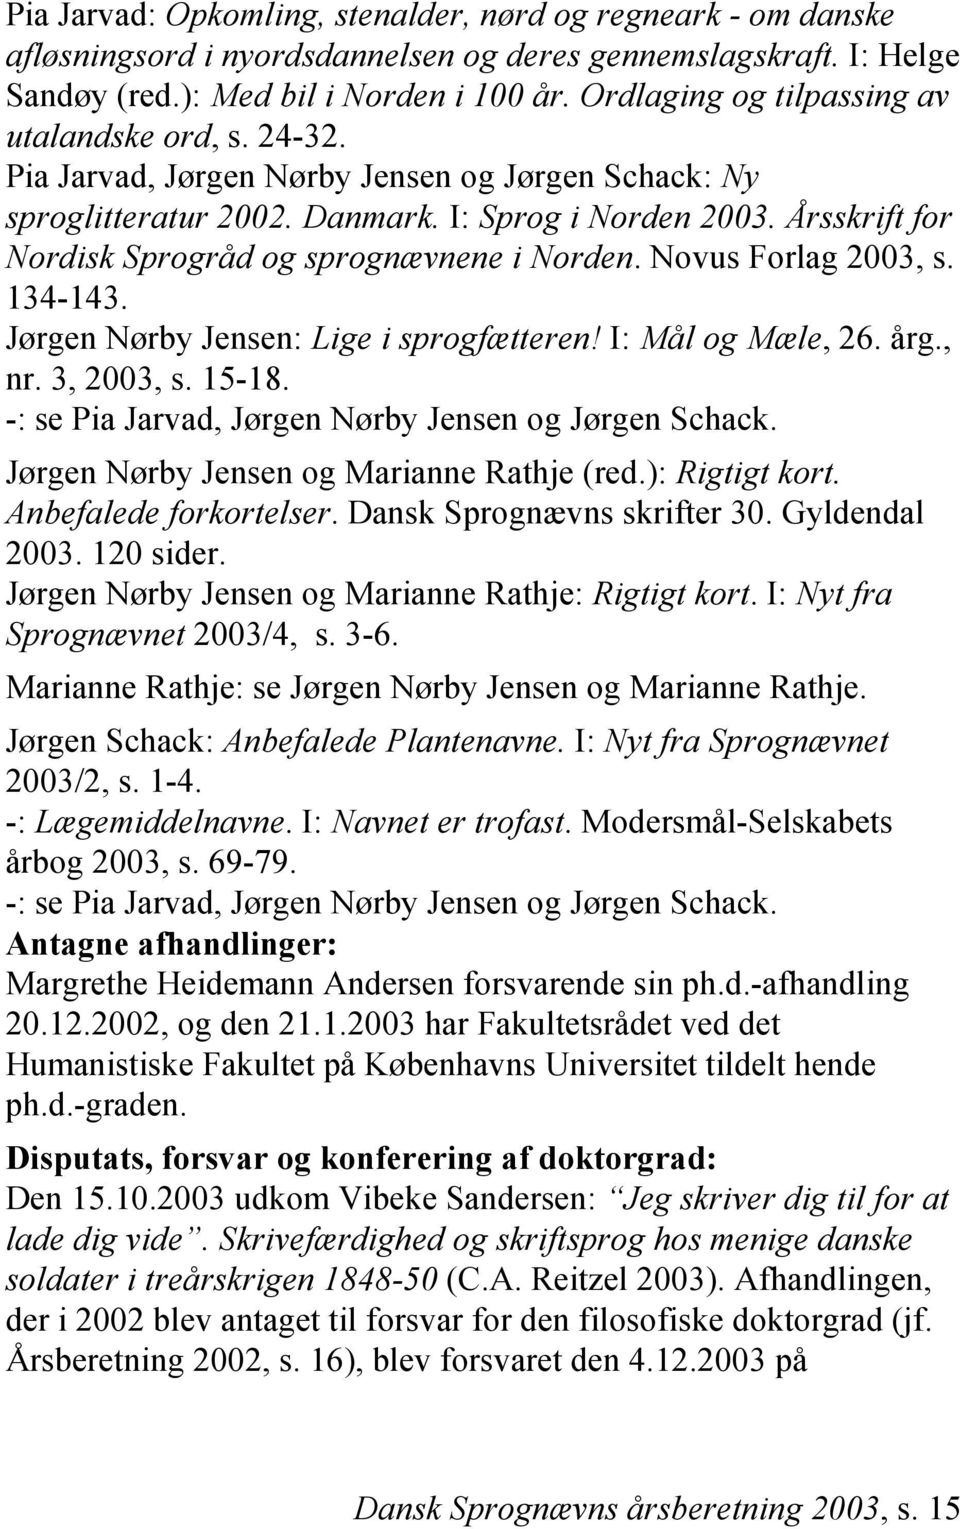 Årsskrift for Nordisk Sprogråd og sprognævnene i Norden. Novus Forlag 2003, s. 134-143. Jørgen Nørby Jensen: Lige i sprogfætteren! I: Mål og Mæle, 26. årg., nr. 3, 2003, s. 15-18.